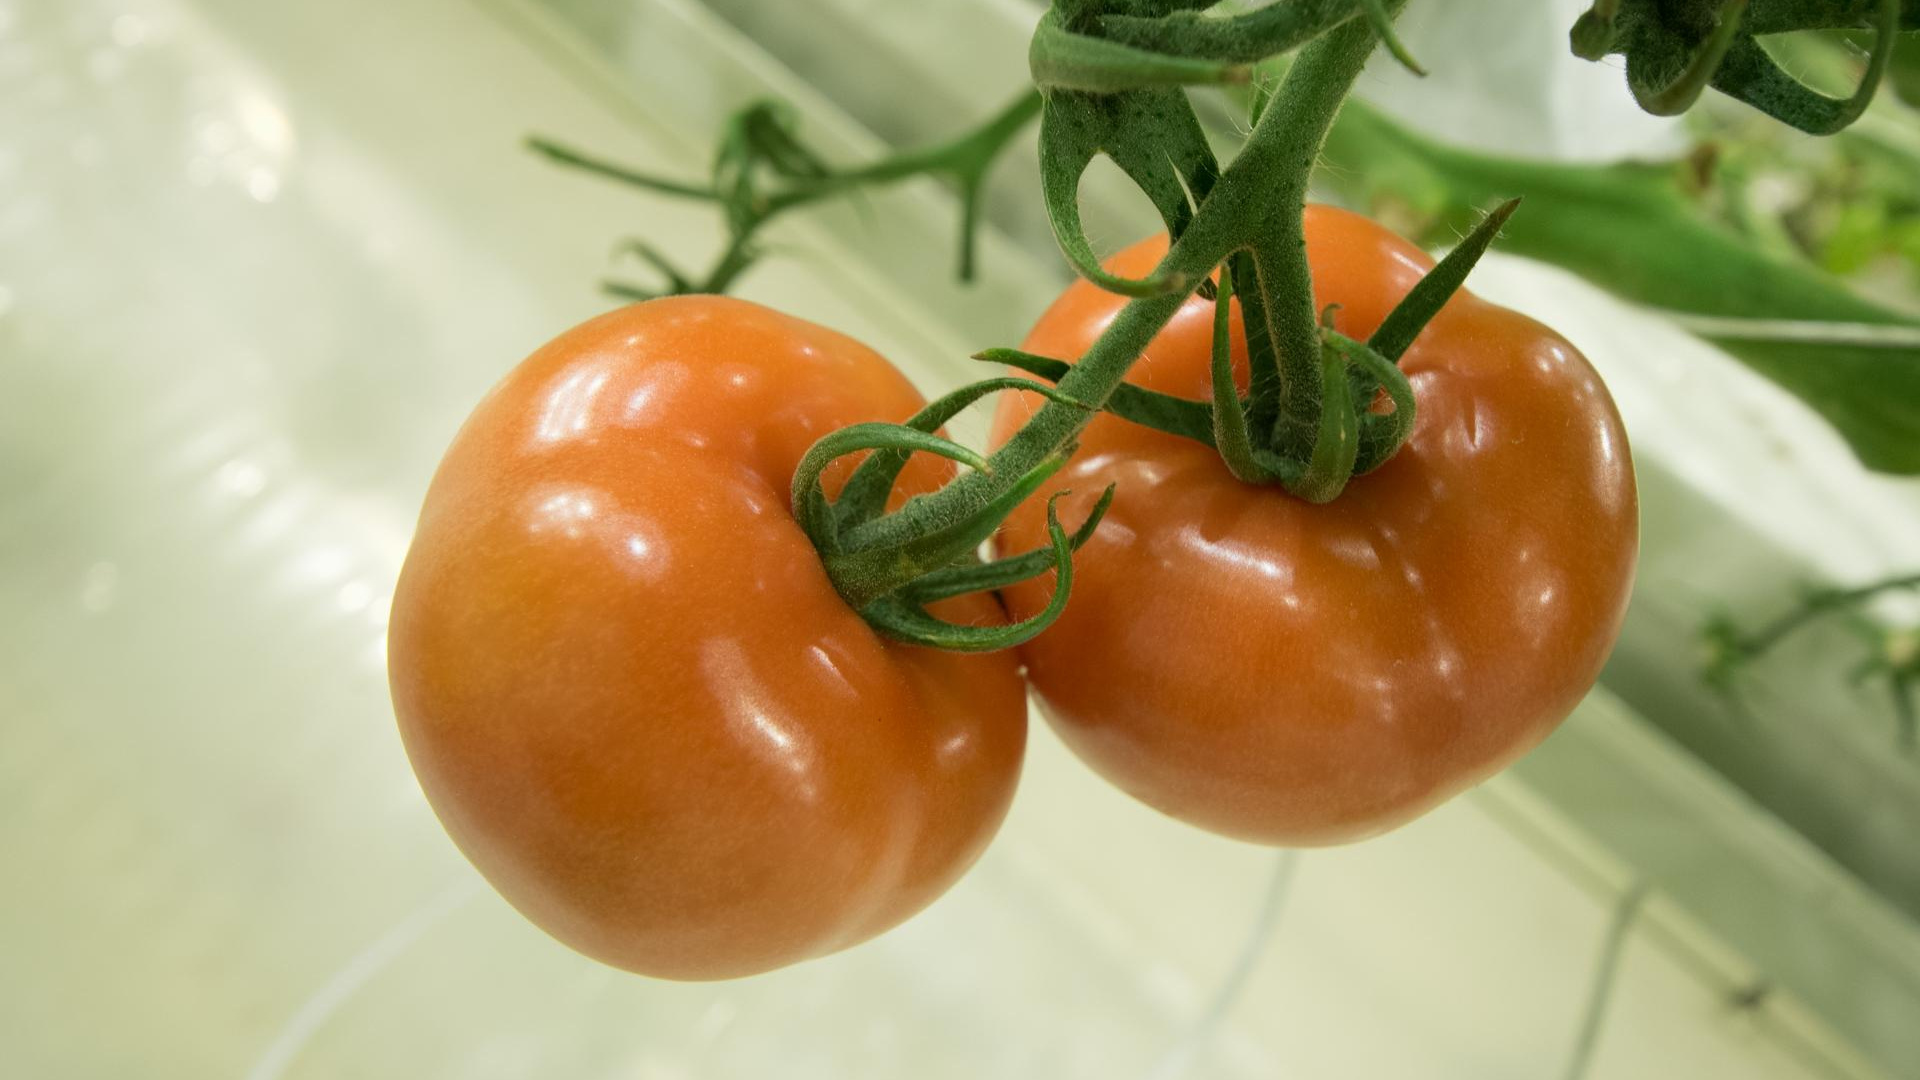 Спасаем овощ. Тюменский агроном дала советы, как бороться с желтеющими томатами — видео